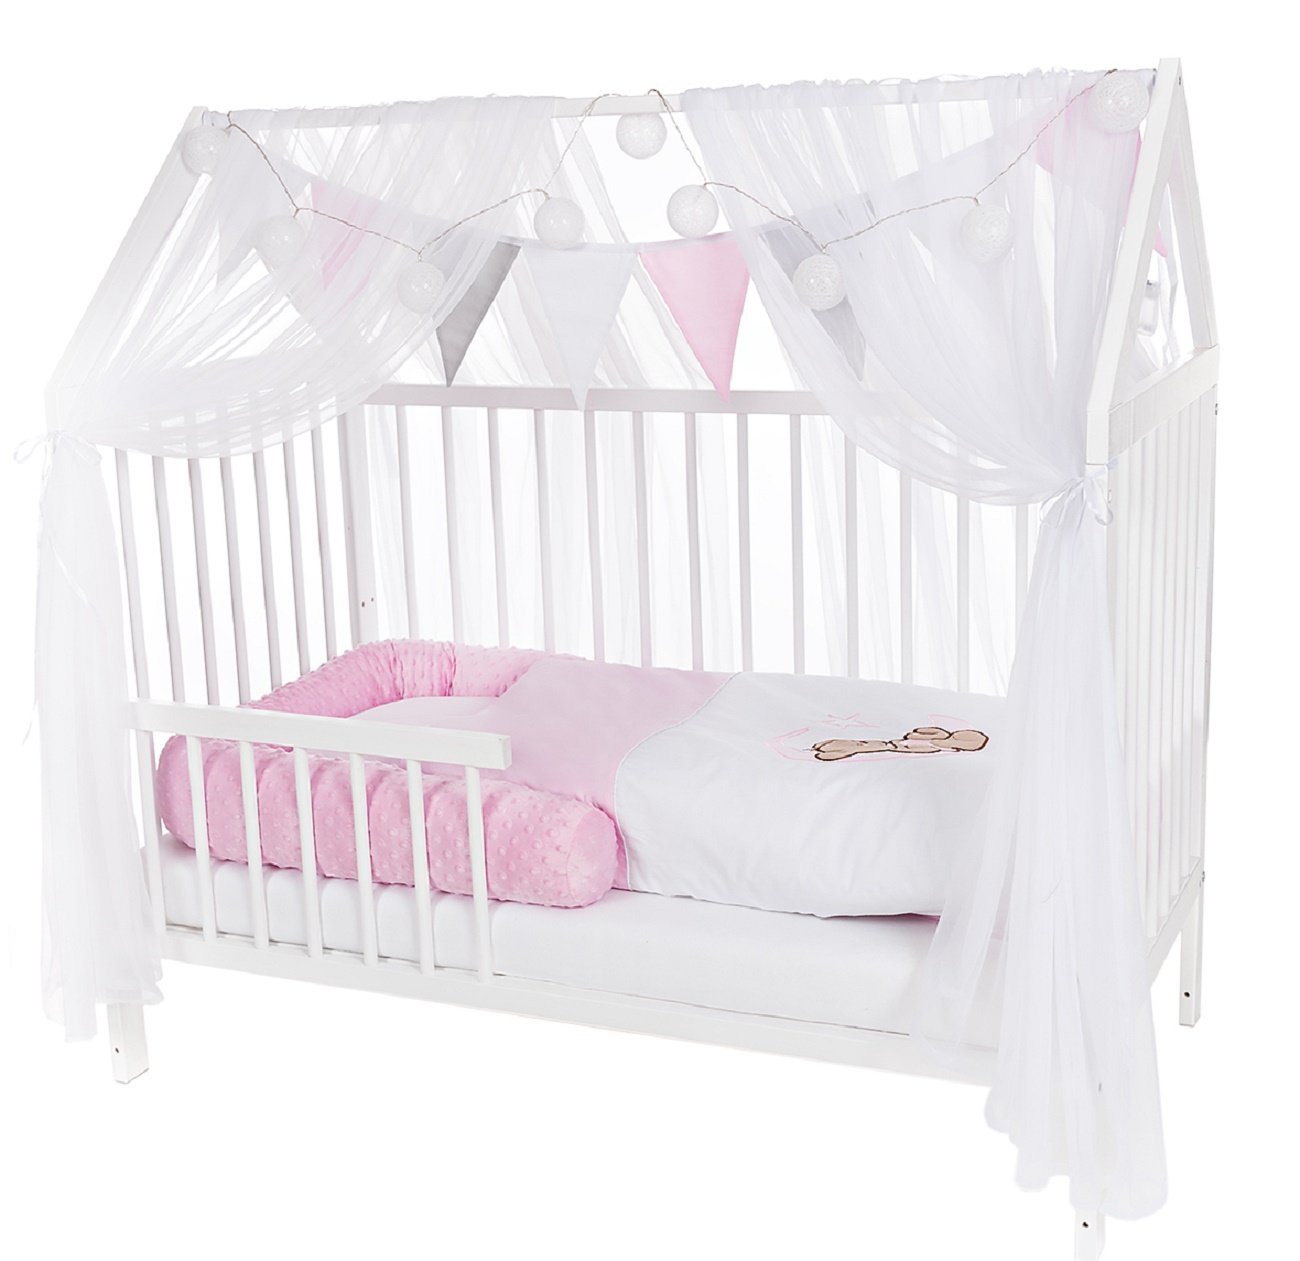 Babyhafen Hausbett Kinderbett 60x120 Rausfallschutz Umbaubar Teddy rosa, grau, mint (Set, Komplettbettset), Ausführung Komplettset von Babyhafen